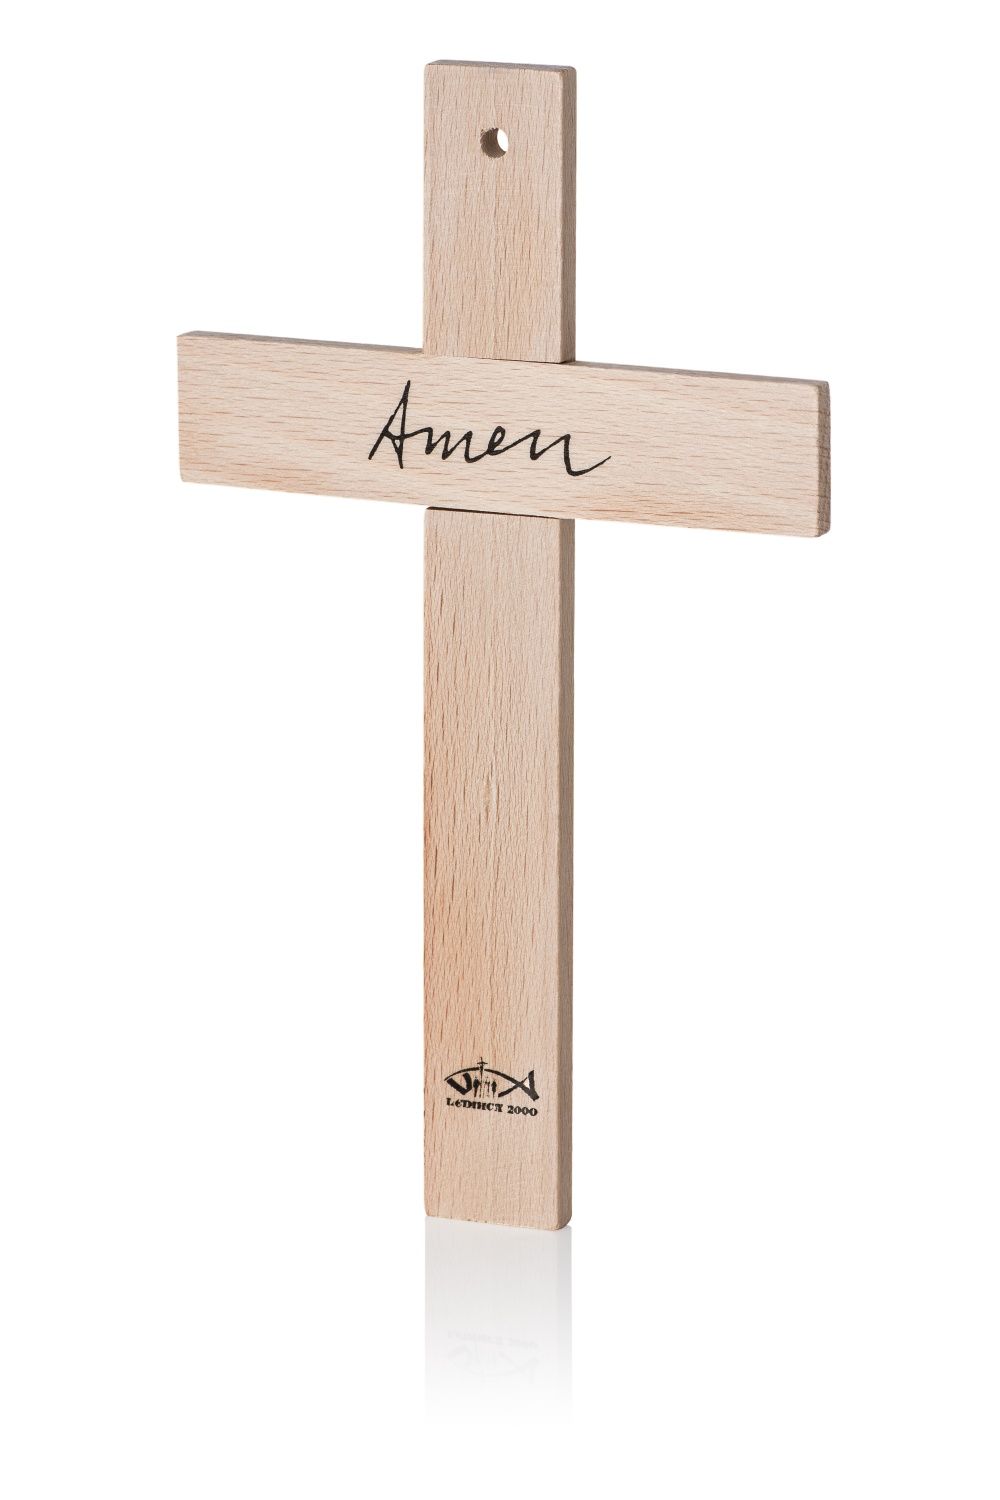 Krzyże krzyżyki drewniane (3 sztuki) napis Amen Lednica2000